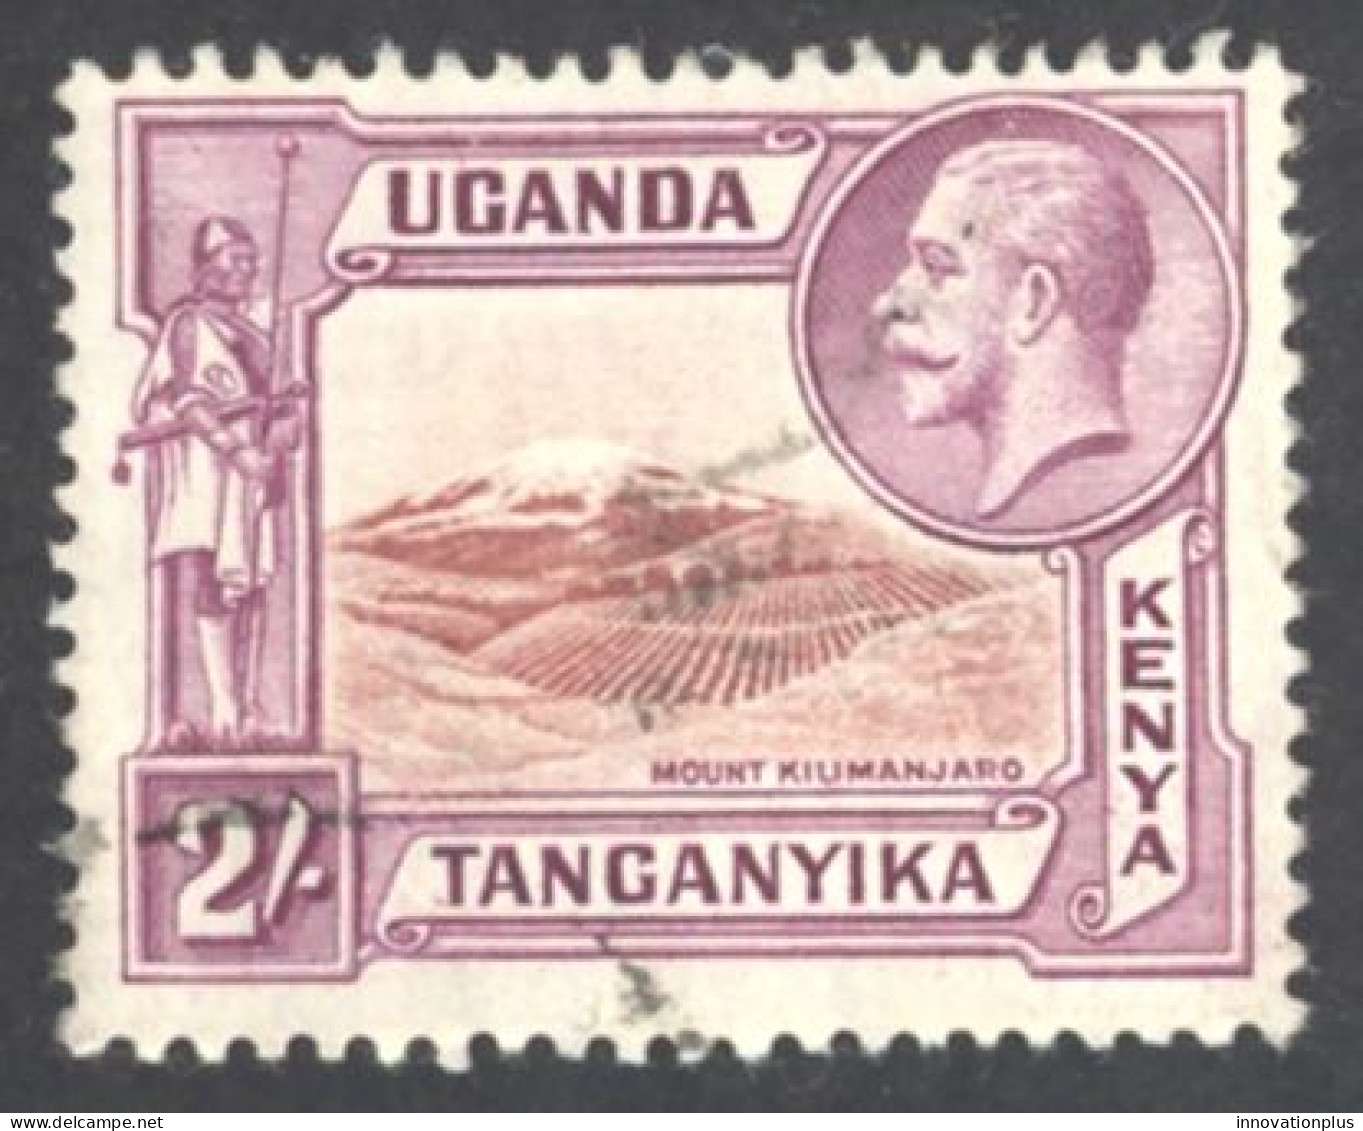 Kenya, Uganda, Tanzania Sc# 55 MH 1935 2sh Definitives - Kenya, Uganda & Tanzania